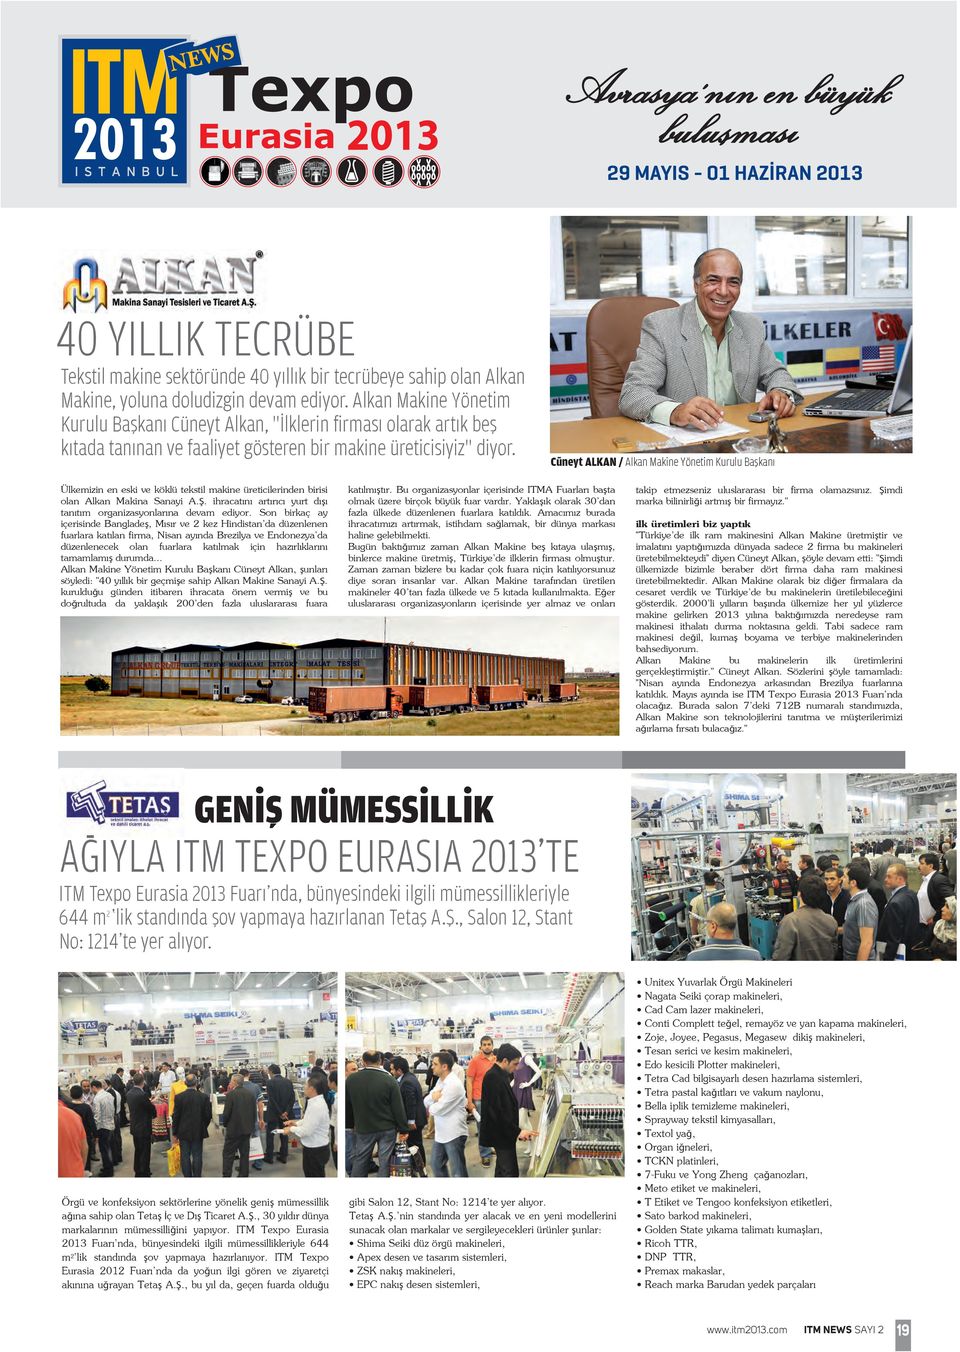 Cüneyt ALKAN / Alkan Makine Yönetim Kurulu Başkanı Ülkemizin en eski ve köklü tekstil makine üreticilerinden birisi olan Alkan Makina Sanayi A.Ş.